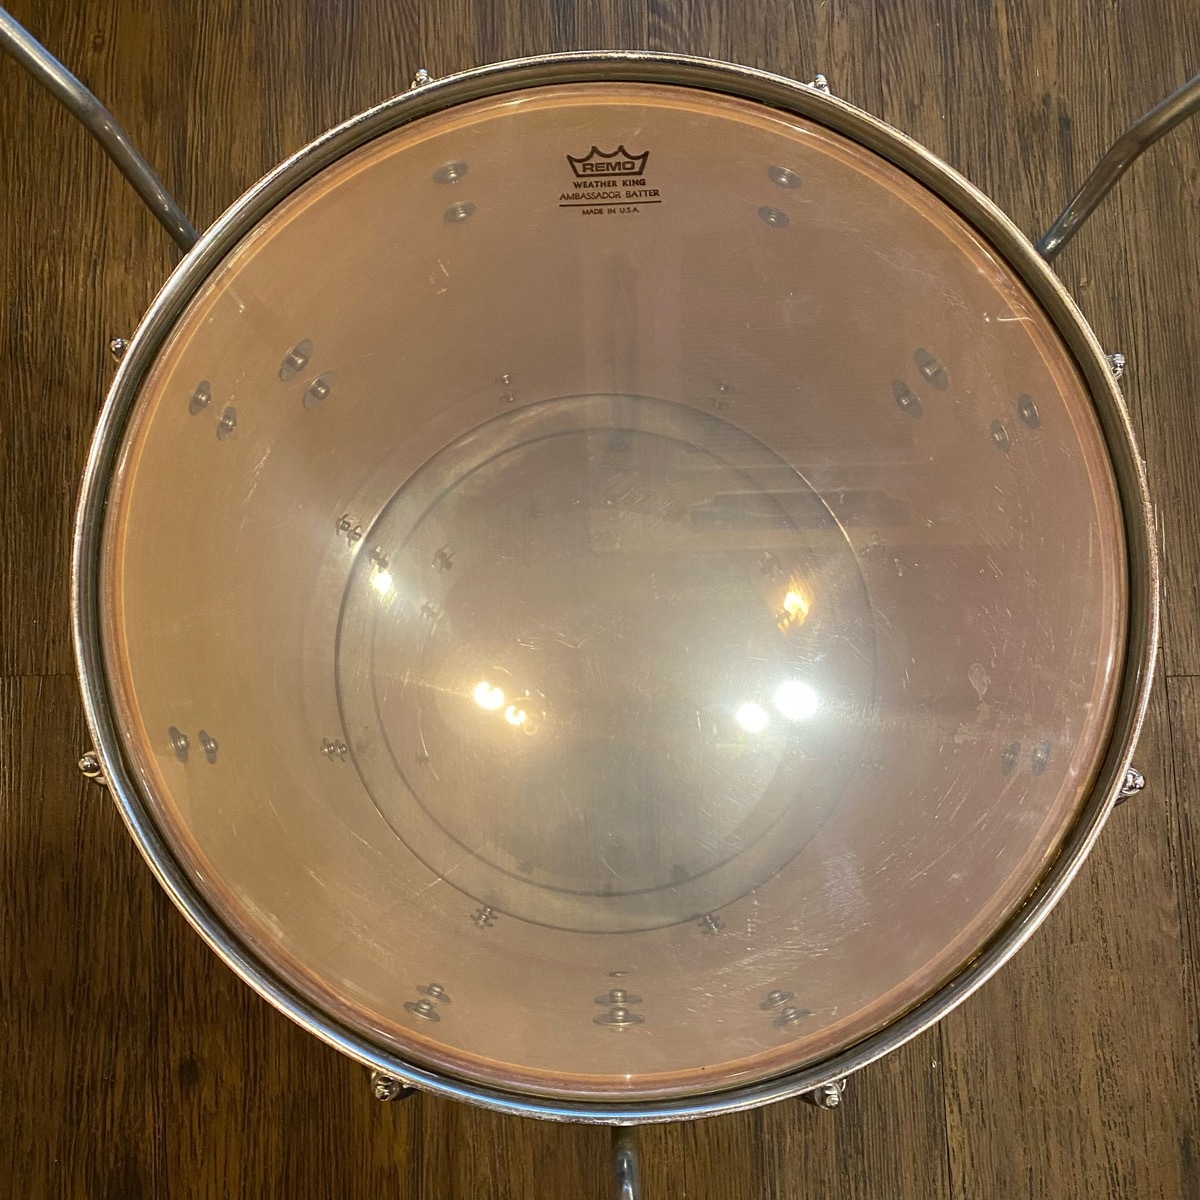 Pearl жемчуг WILDWING series floor tom барабан 16×16 дюймовый -GrunSound-h237-